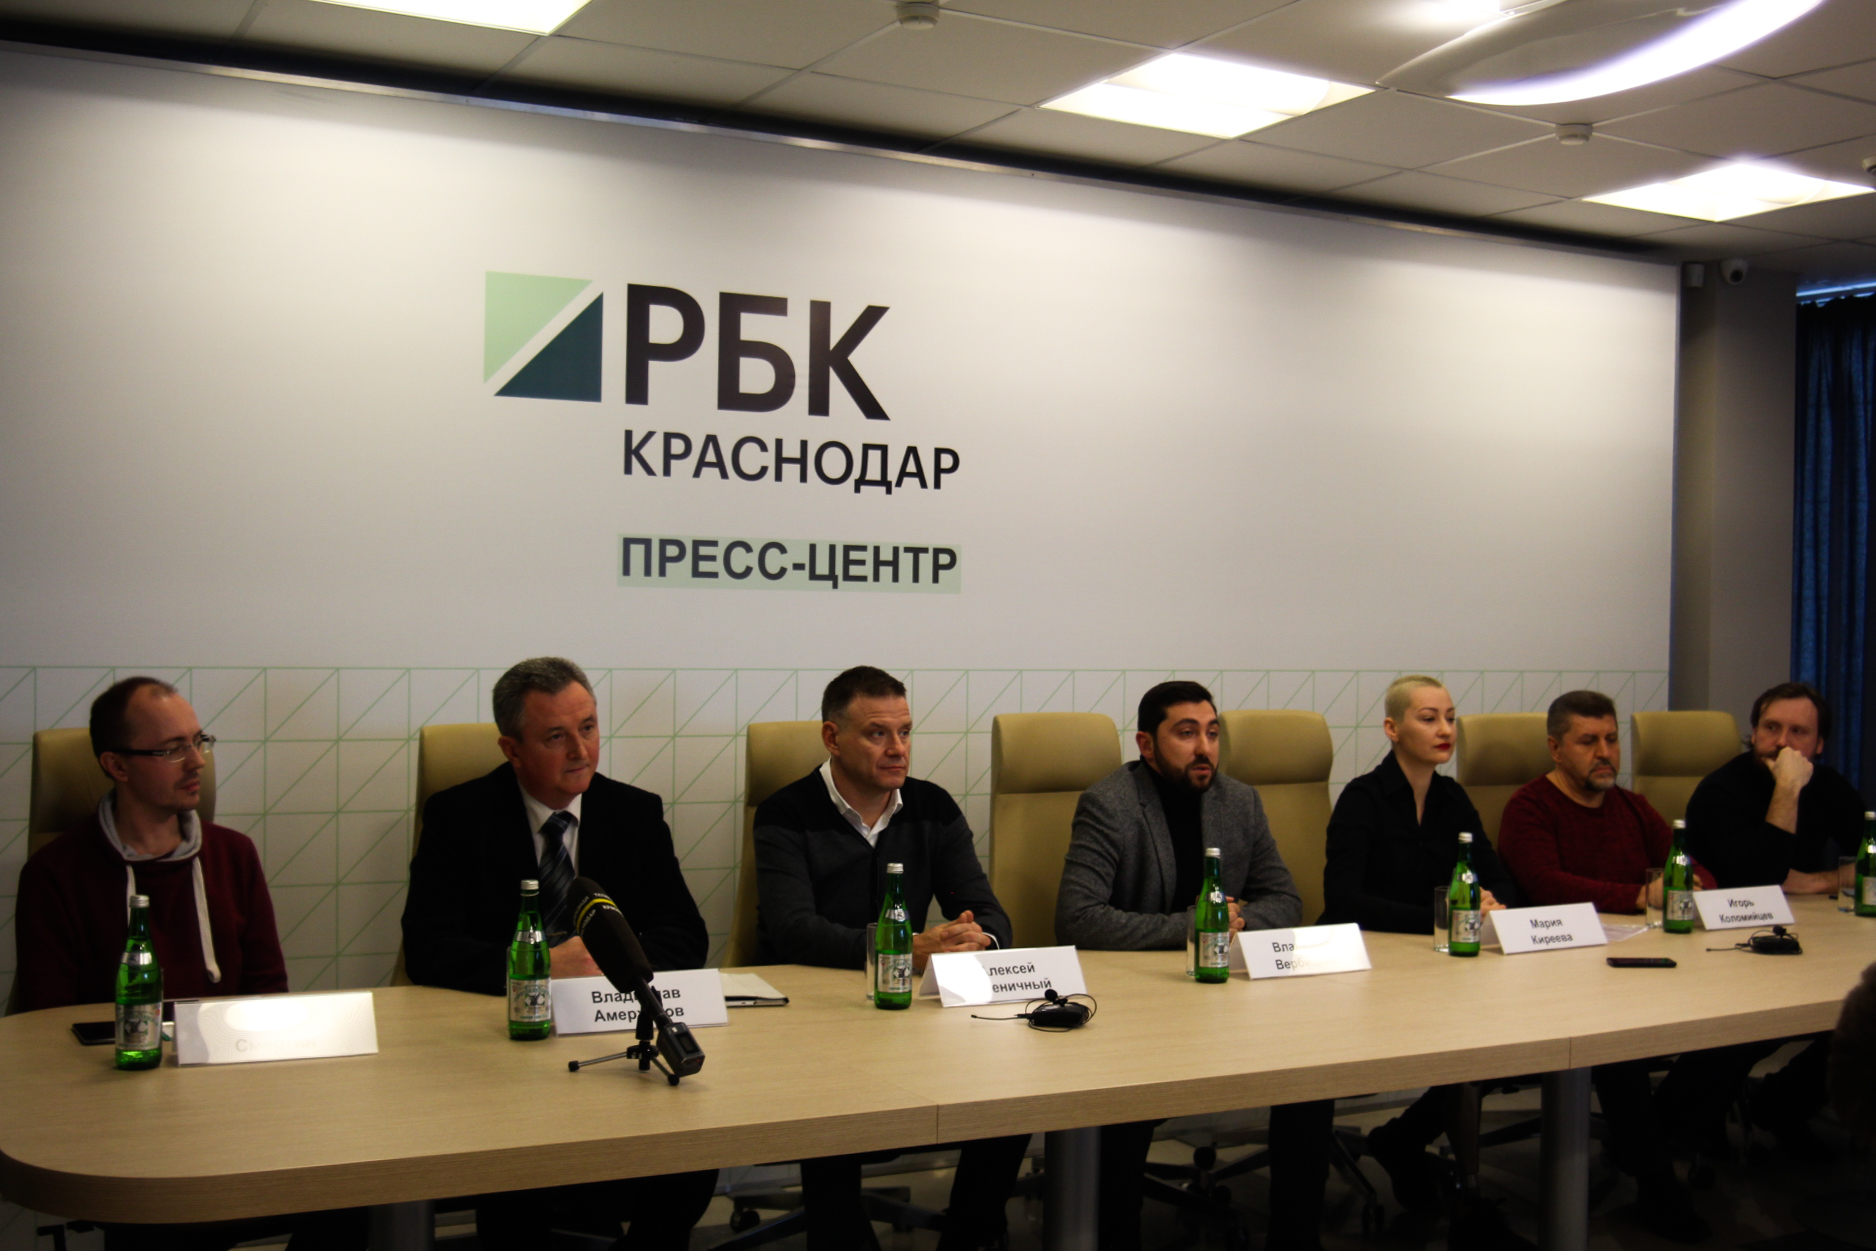  Участники общественного объединения «Команда Краснодара» 12 февраля провели пресс-конференцию, на которой объявили о своем намерении участвовать в выборах в городскую Думу